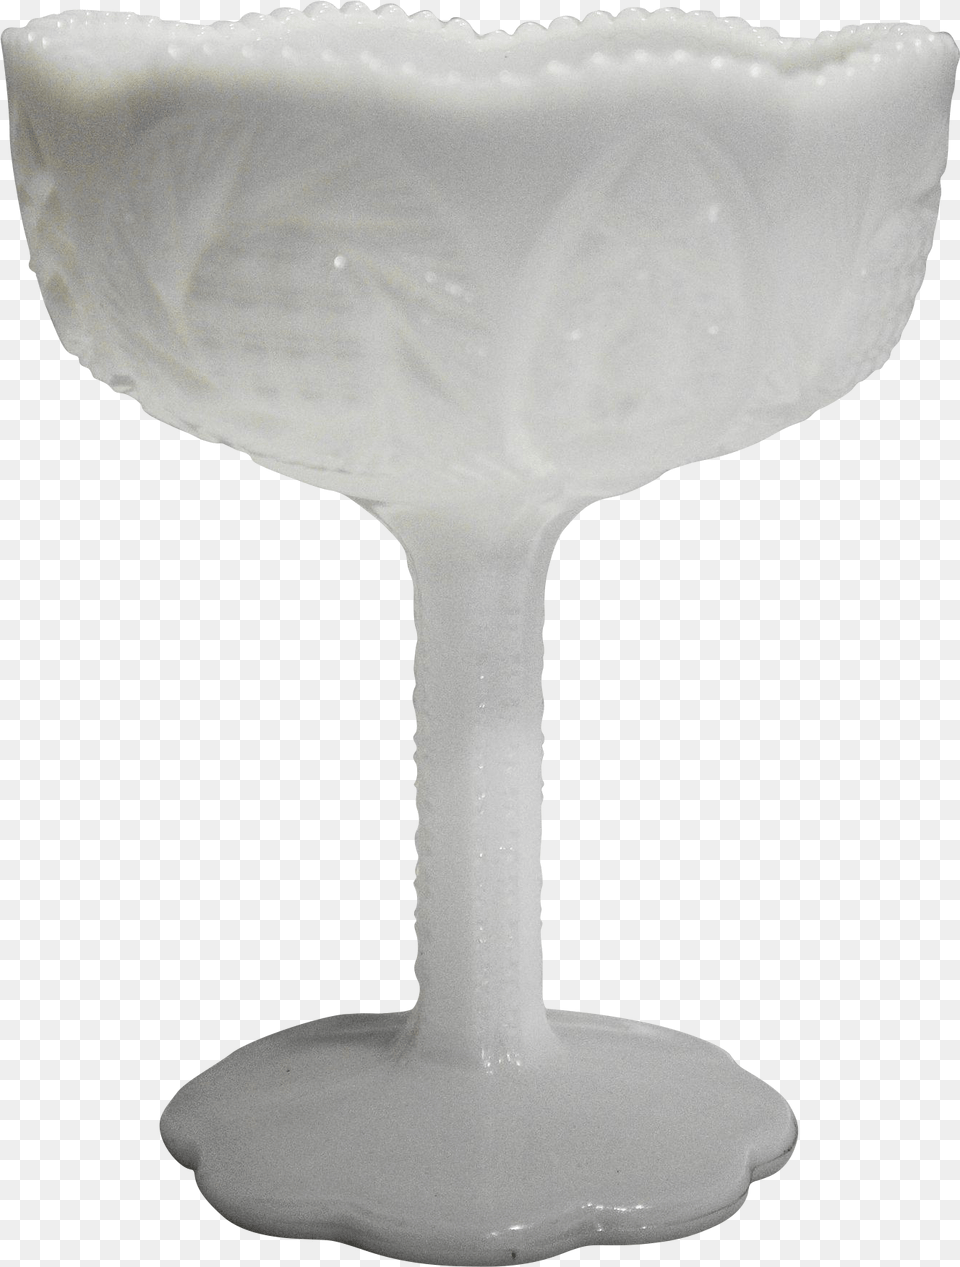 Champagne Stemware, Glass, Goblet, Art, Porcelain Png Image